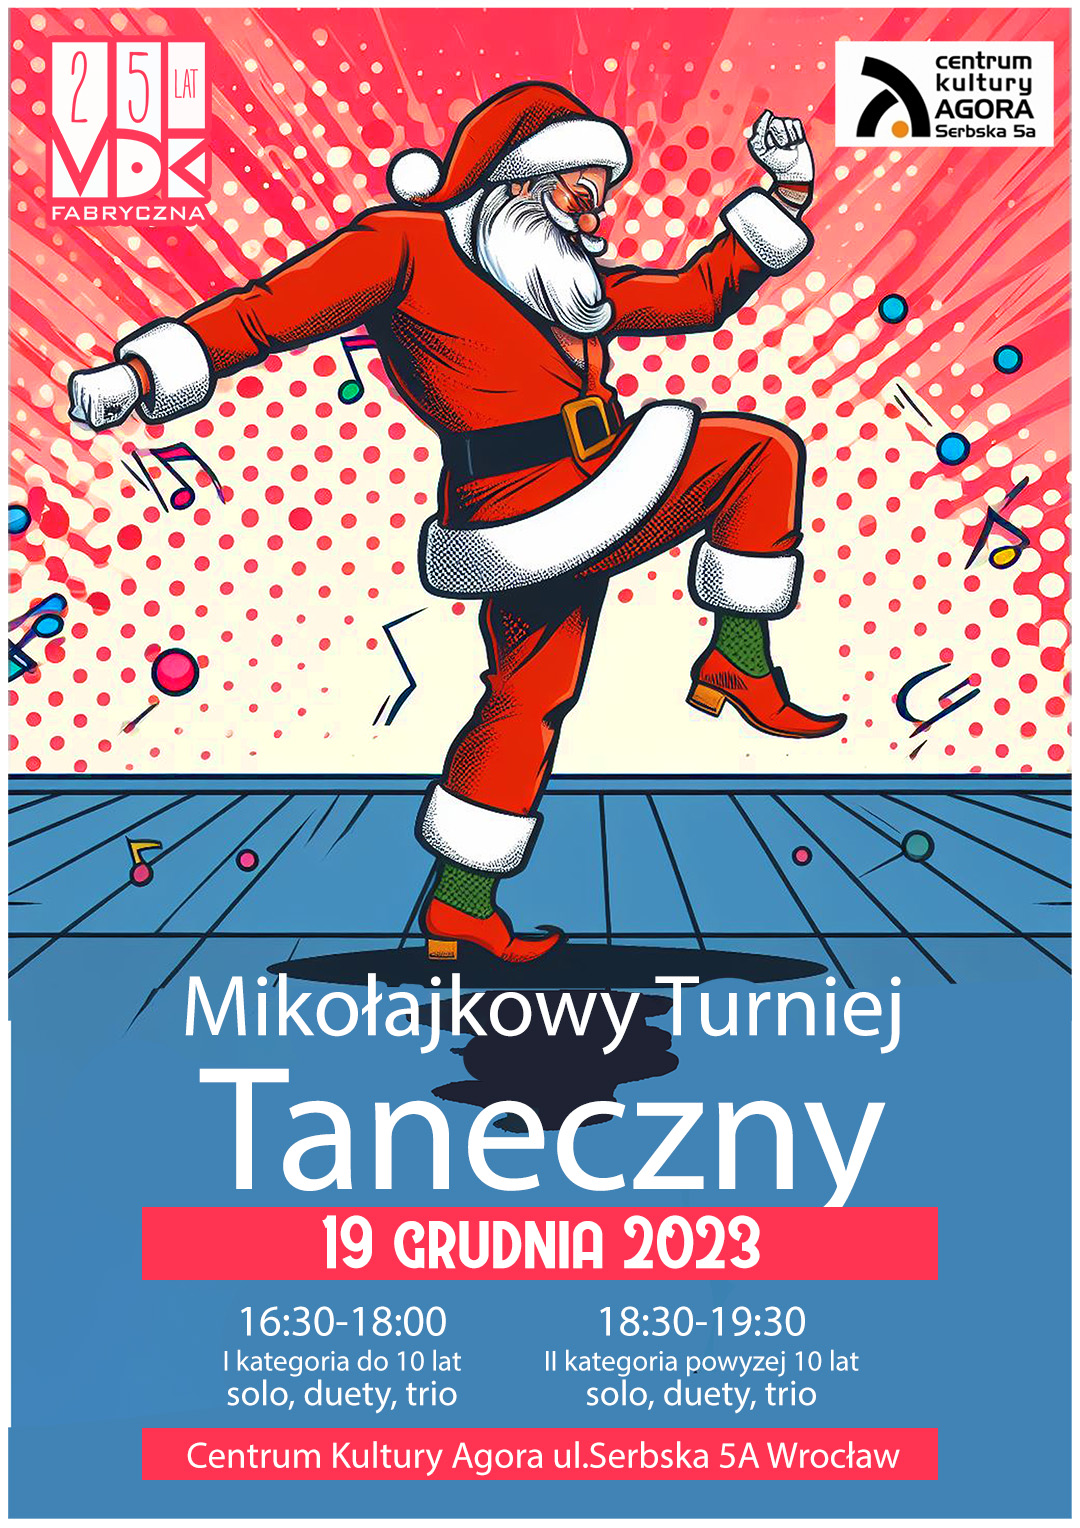 Mikołajkowy Turniej Taneczny w Agorze -19 grudnia 2023 - ZMIANA DATY!!!